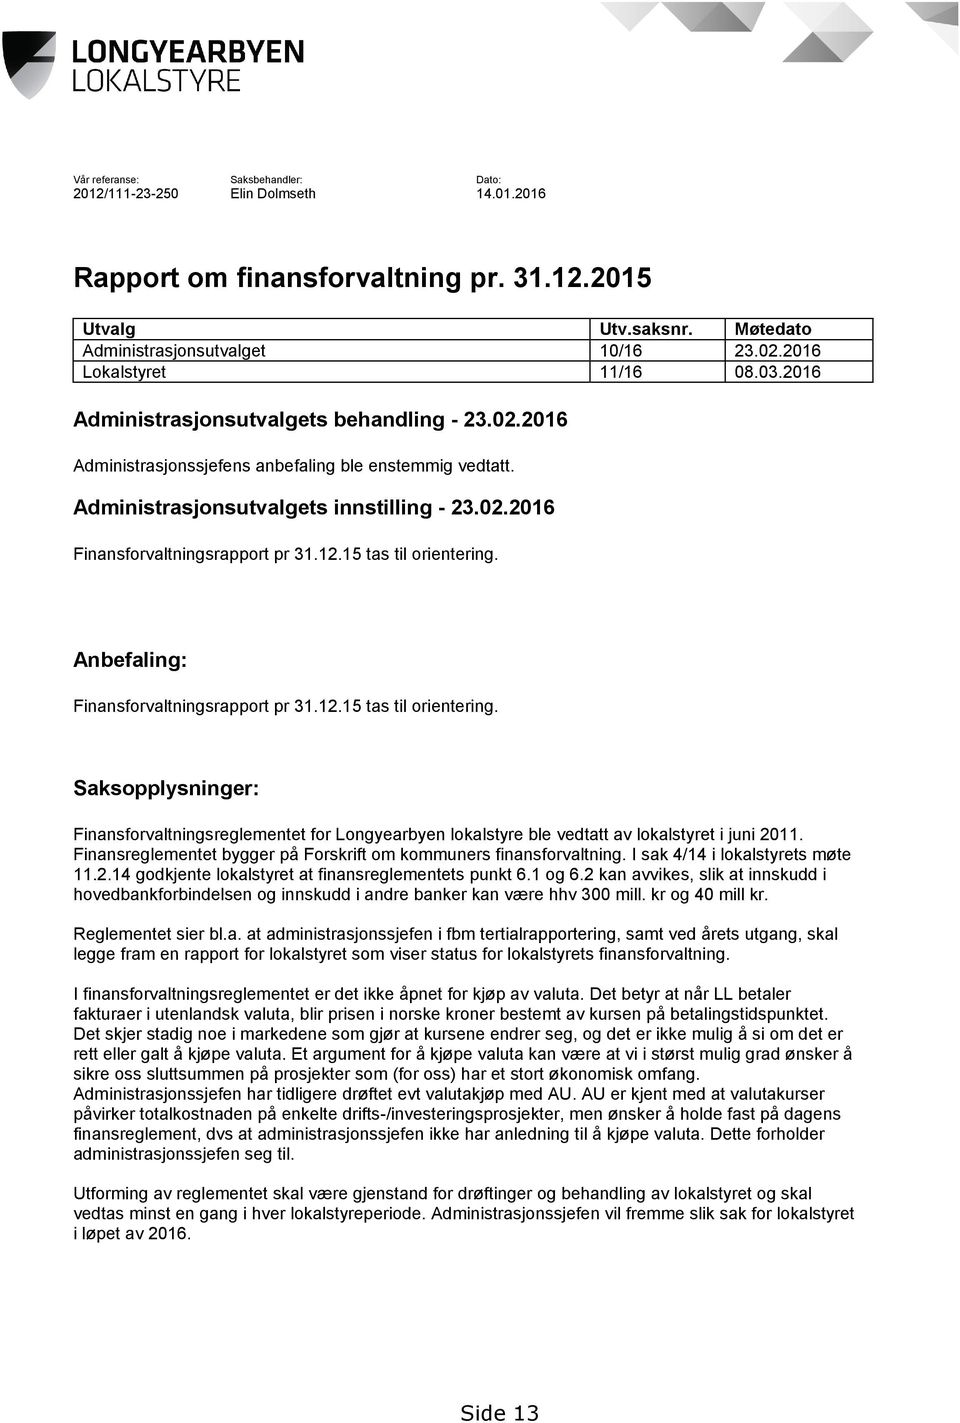 12.15 tas til orientering. Anbefaling: Finansforvaltningsrapport pr 31.12.15 tas til orientering. Saksopplysninger: Finansforvaltningsreglementet for Longyearbyen lokalstyre ble vedtatt av lokalstyret i juni 2011.